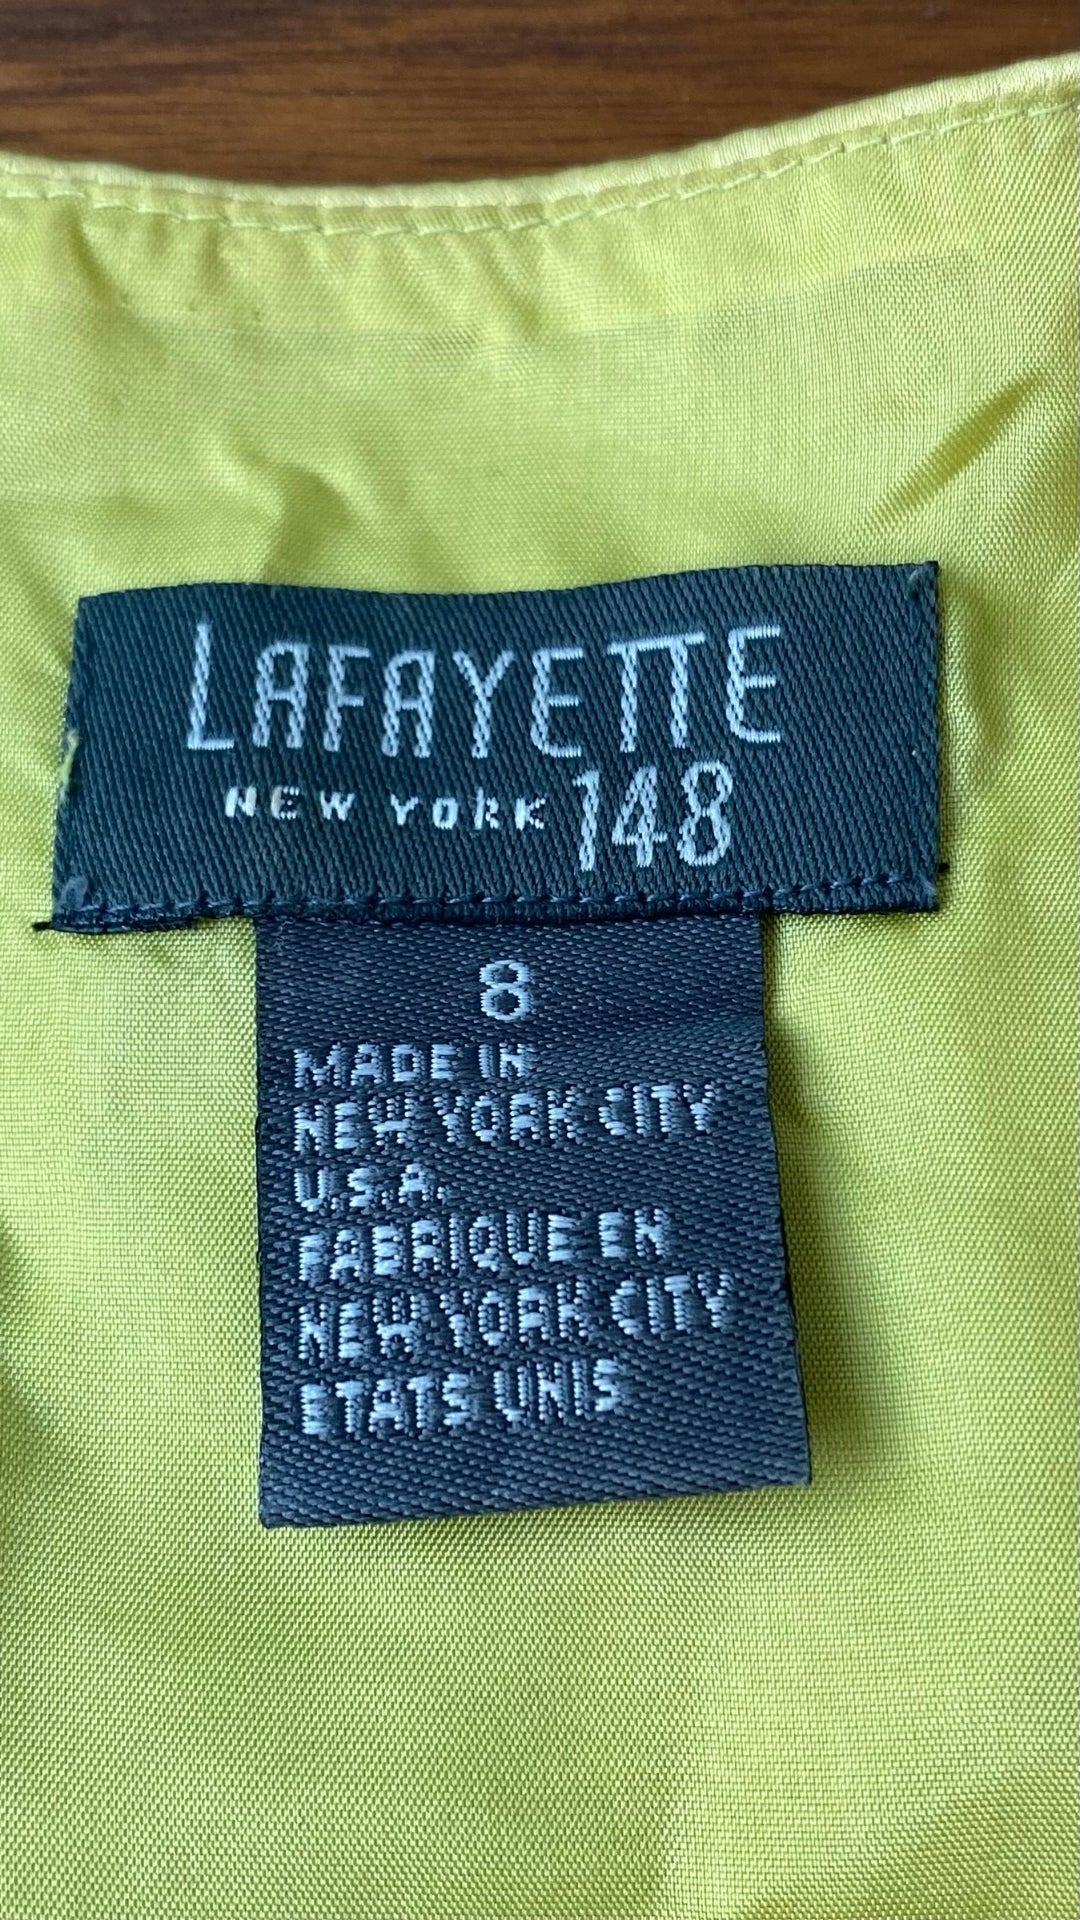 Camisole portefeuille Lafayette 148 New York en soie,  taille 8. Vue de l'étiquette de marque et taille.